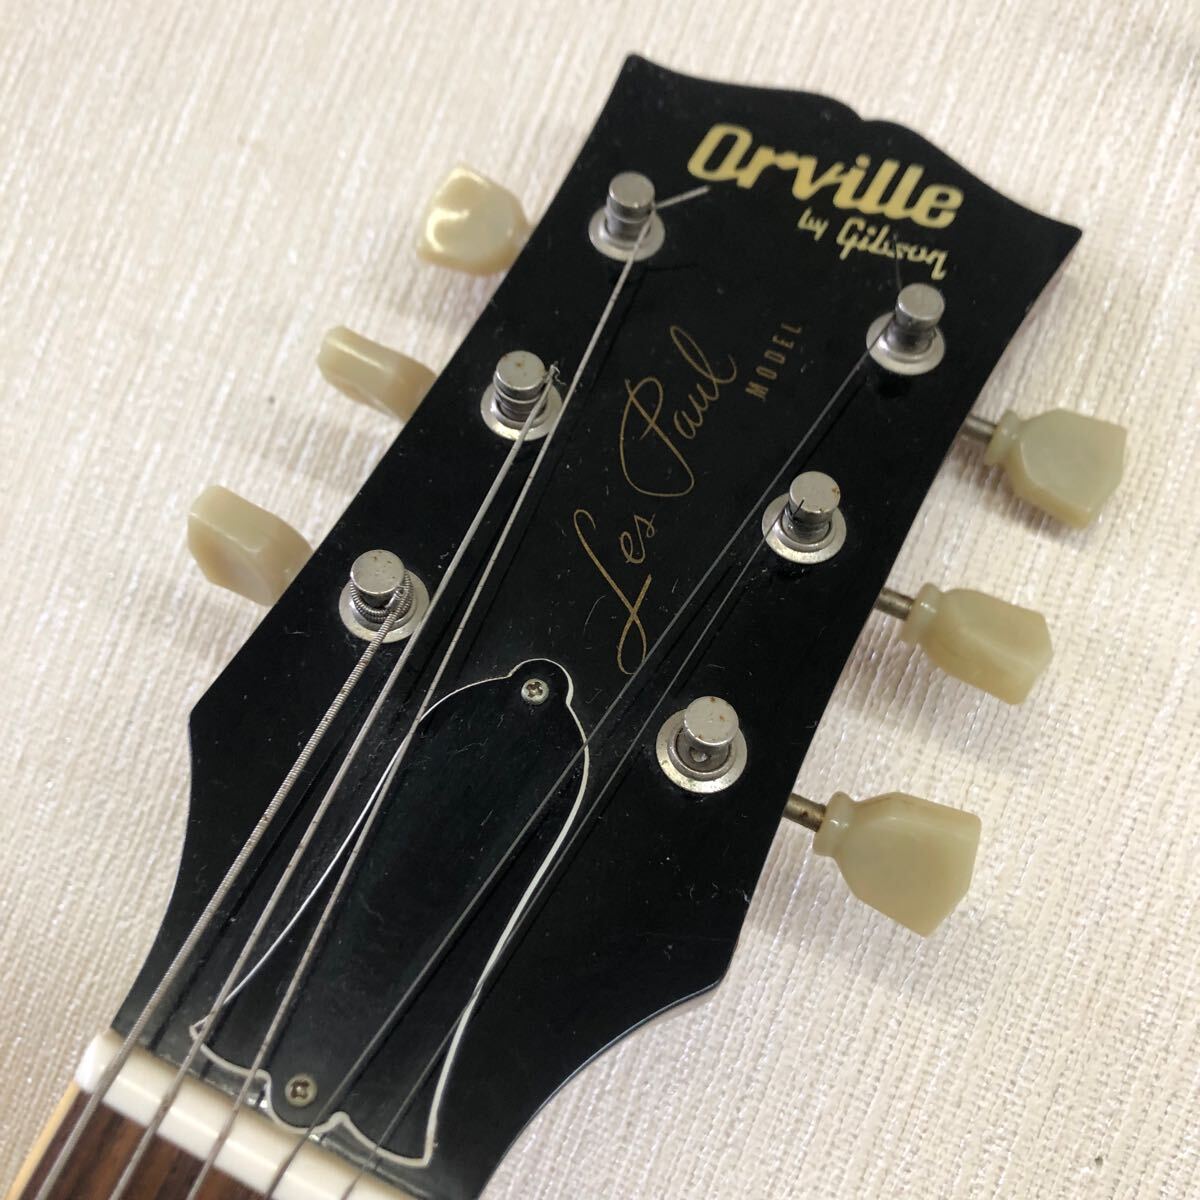 【ジャンク品】Orville by Gibson レスポールモデル Les Paul MODEL オーヴィルバイギブソン 未チェック 錆あり_画像6